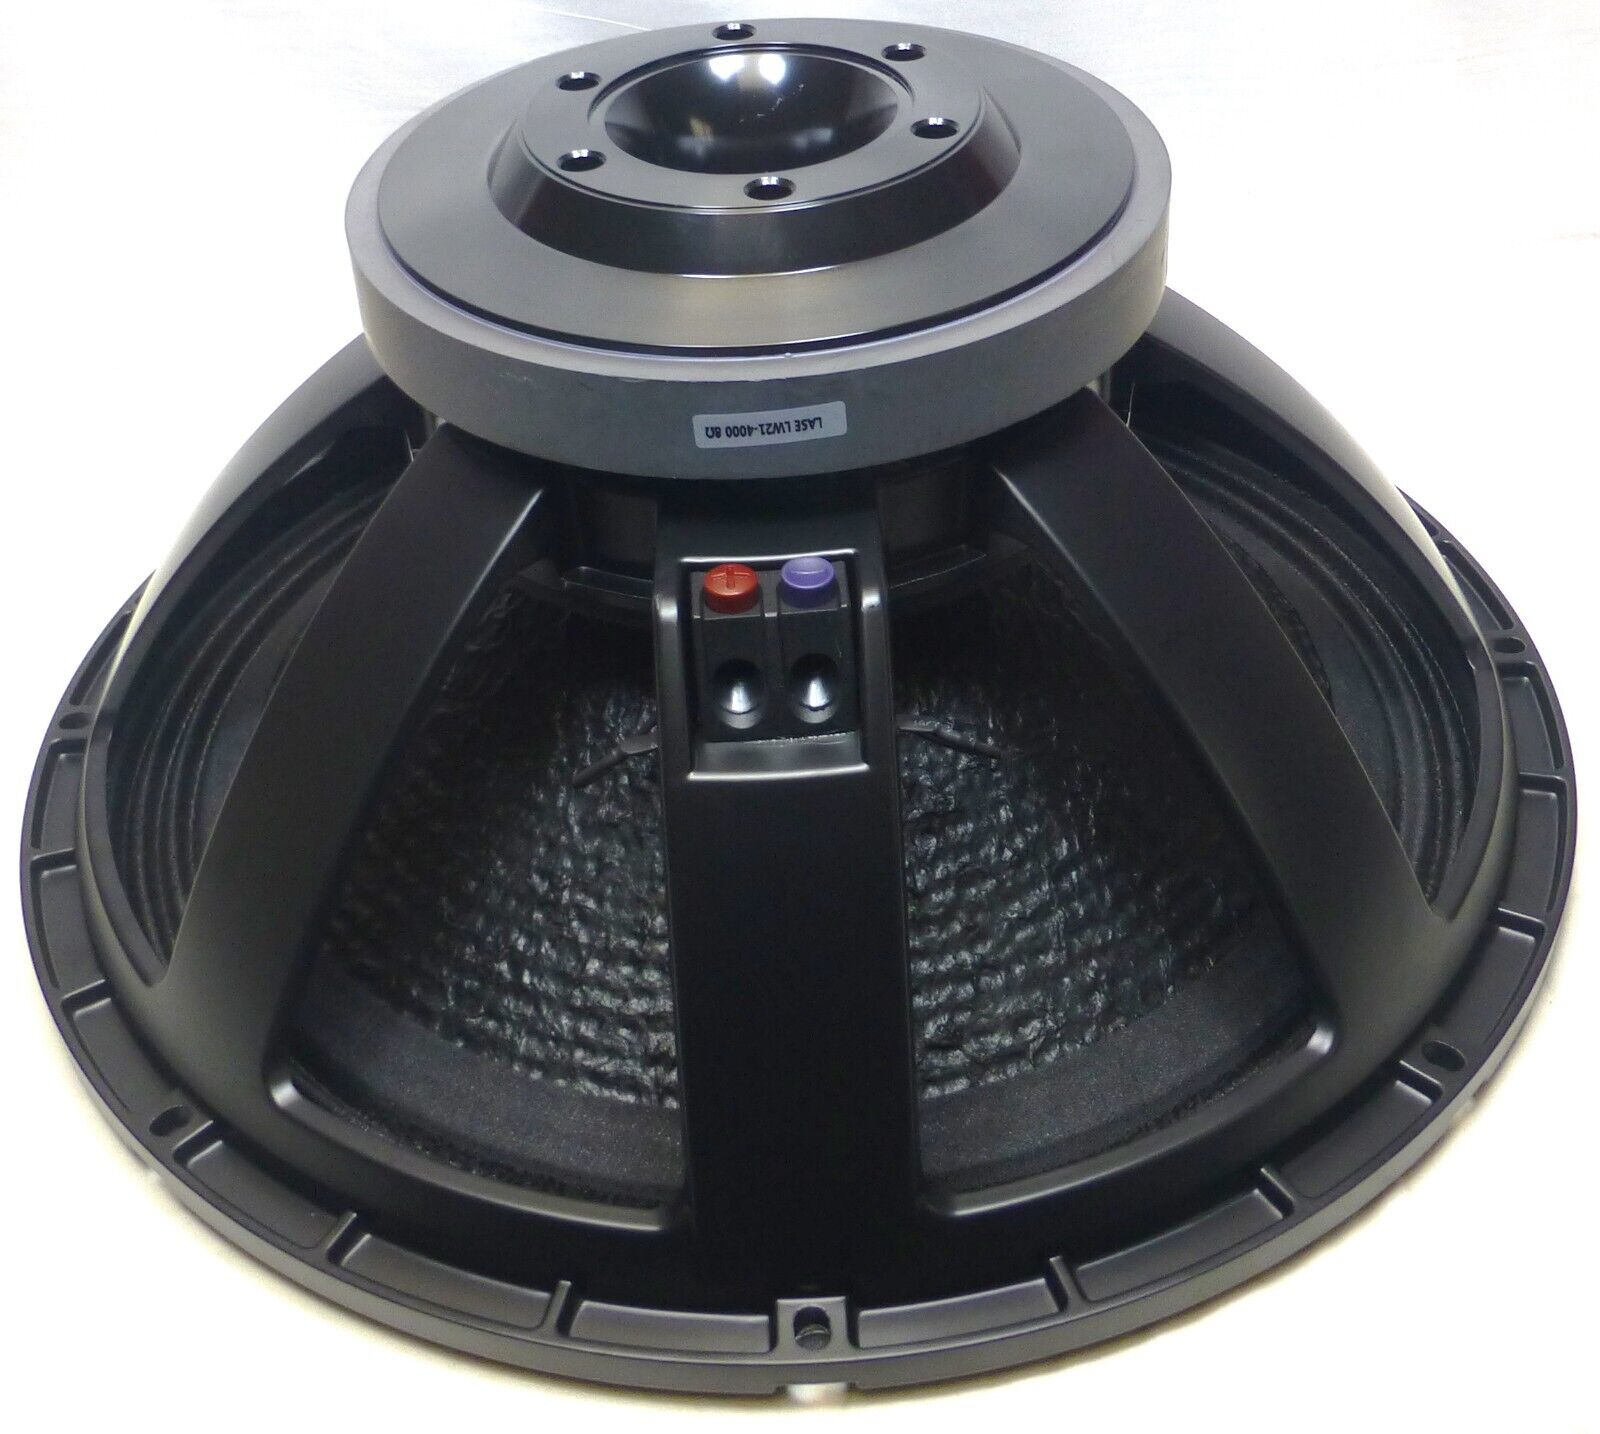 LASE 21LW-4000 21" Speaker Low Frequency Woofer